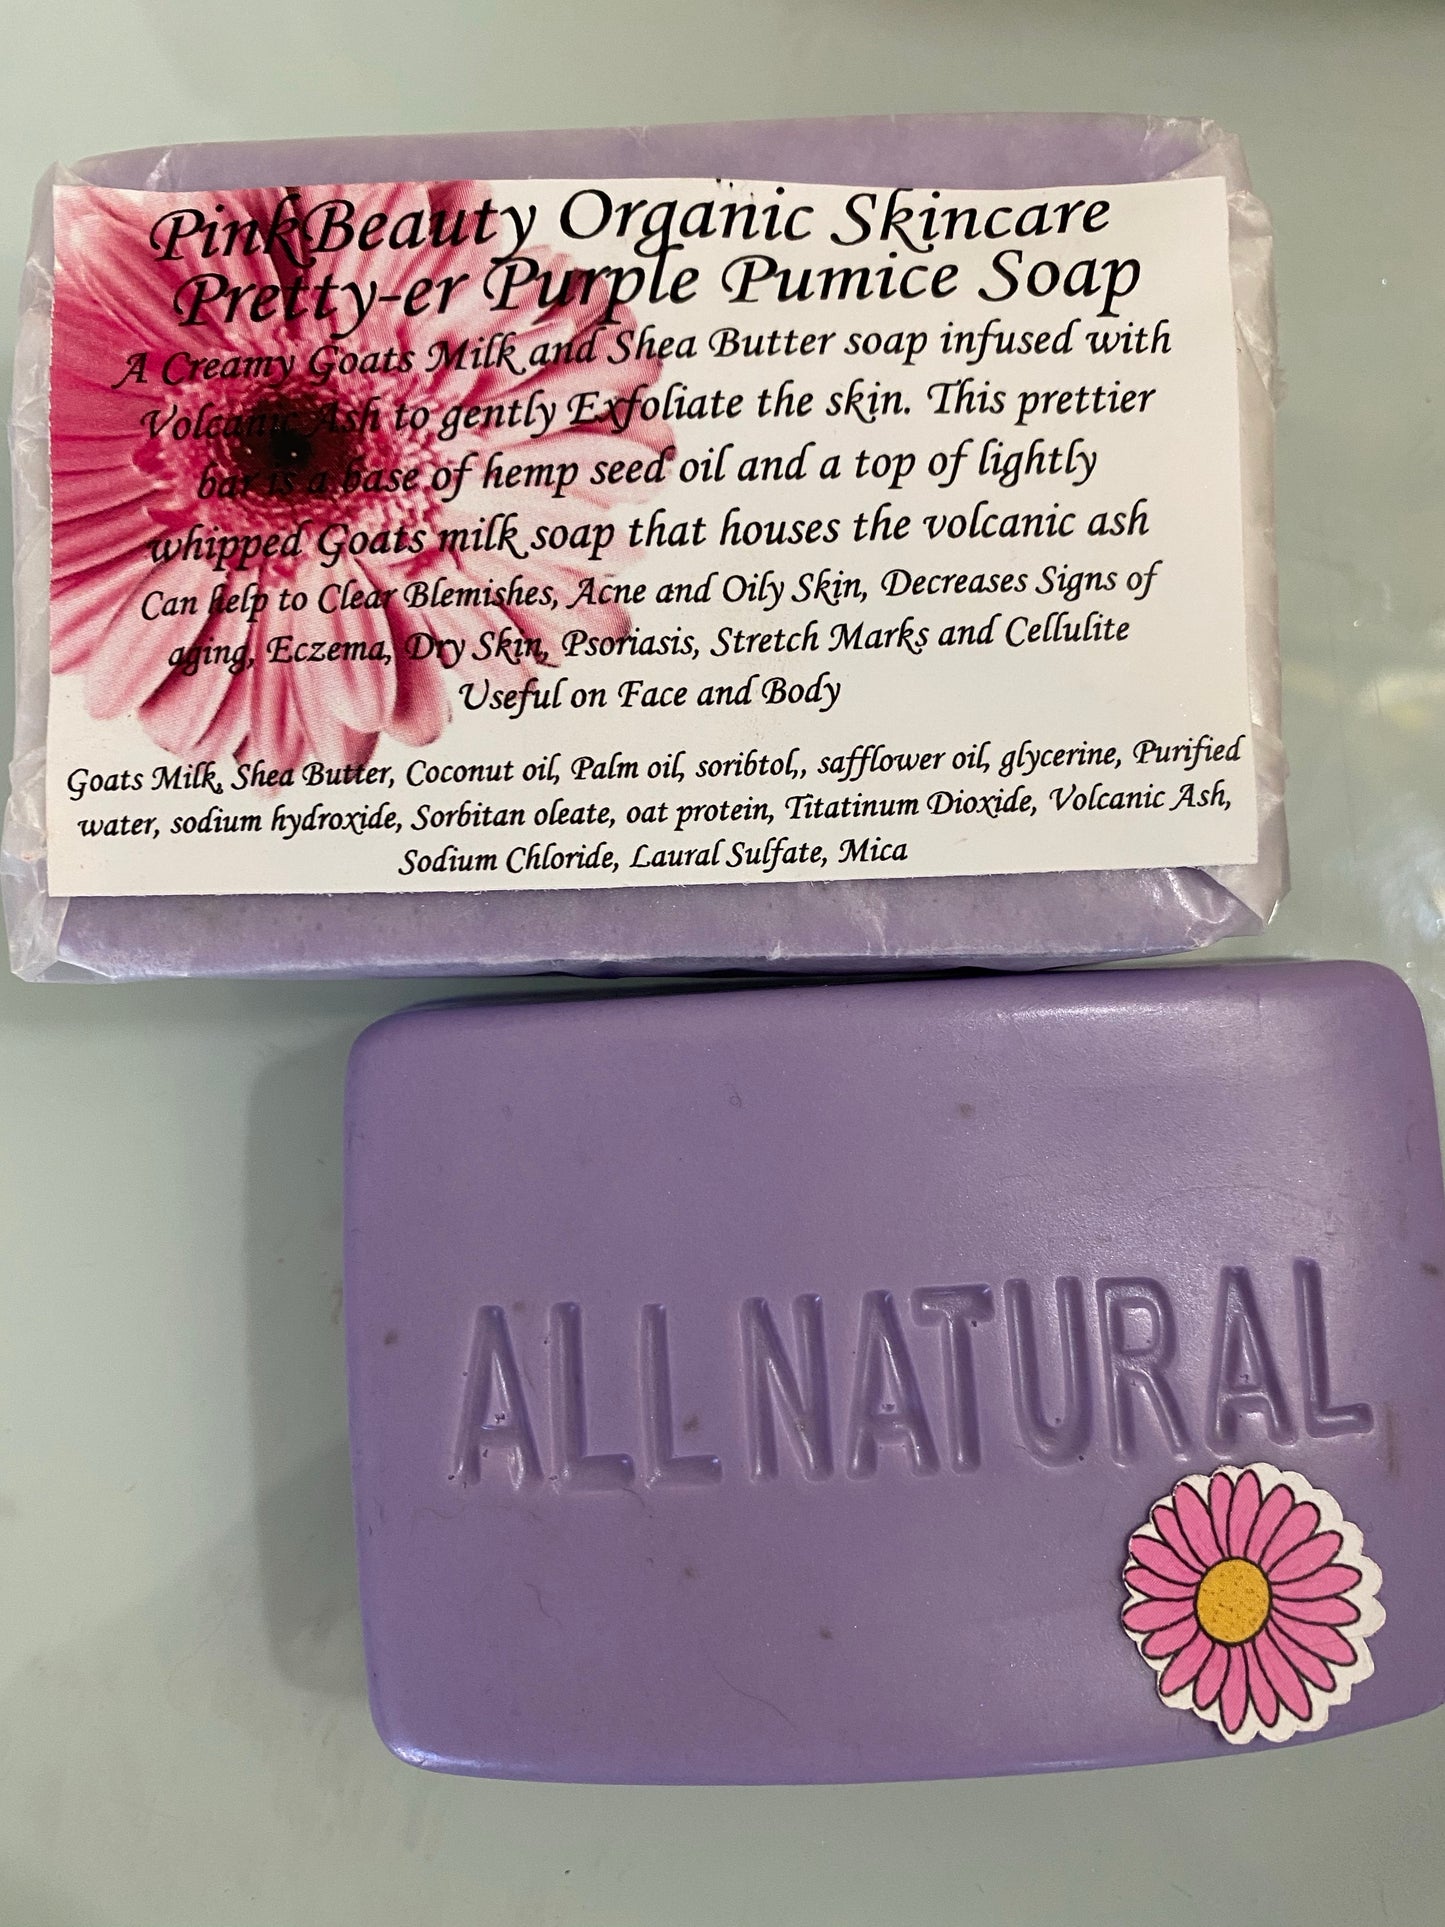 Pretty Purple Pumice Soaps